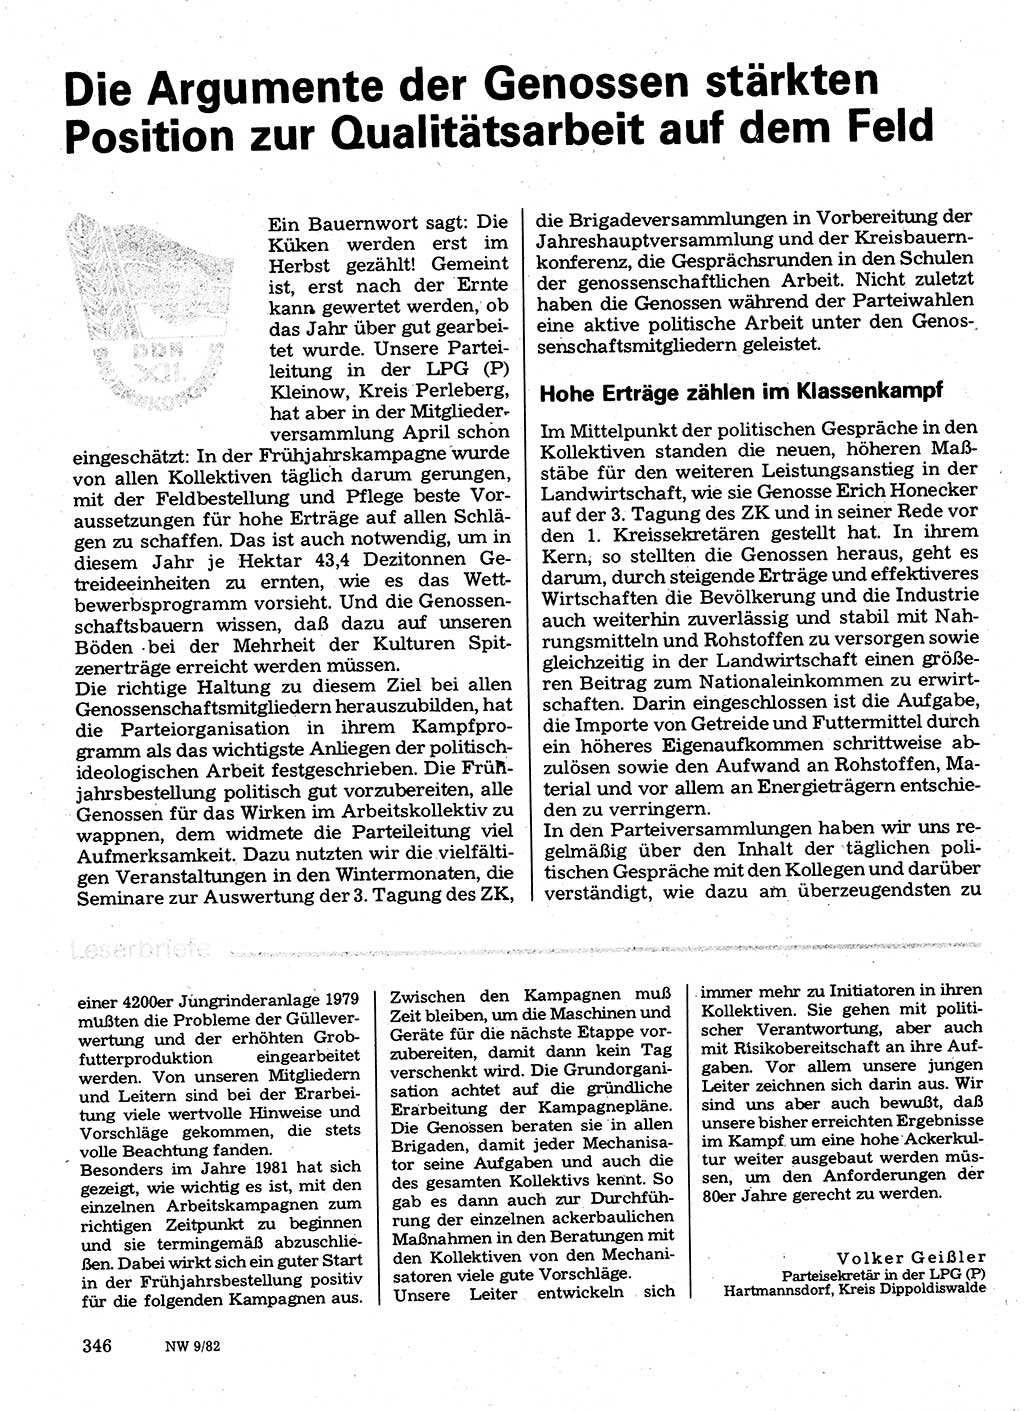 Neuer Weg (NW), Organ des Zentralkomitees (ZK) der SED (Sozialistische Einheitspartei Deutschlands) für Fragen des Parteilebens, 37. Jahrgang [Deutsche Demokratische Republik (DDR)] 1982, Seite 346 (NW ZK SED DDR 1982, S. 346)